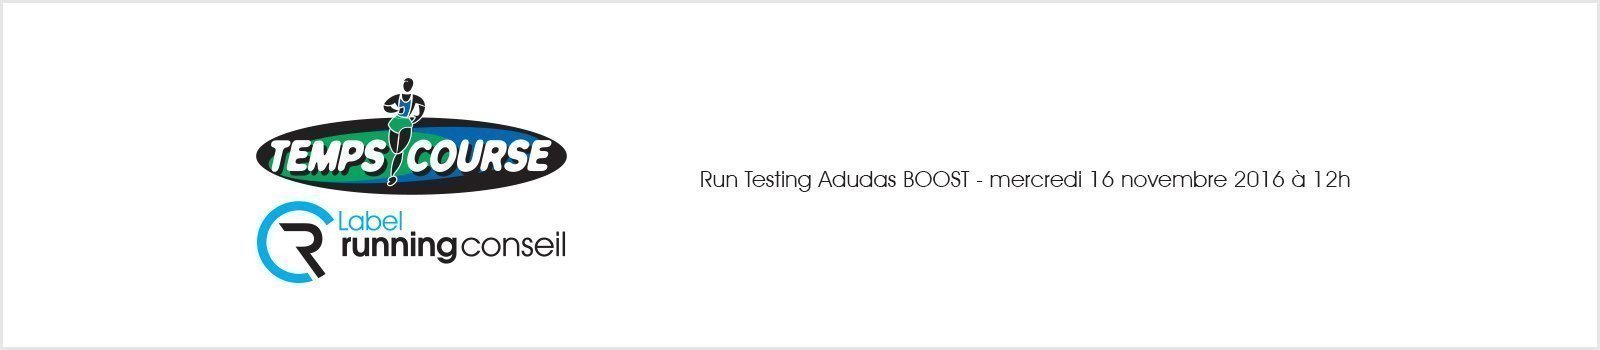 Run Testing Adidas BOOST - mercredi 16 novembre 2016 à 12h